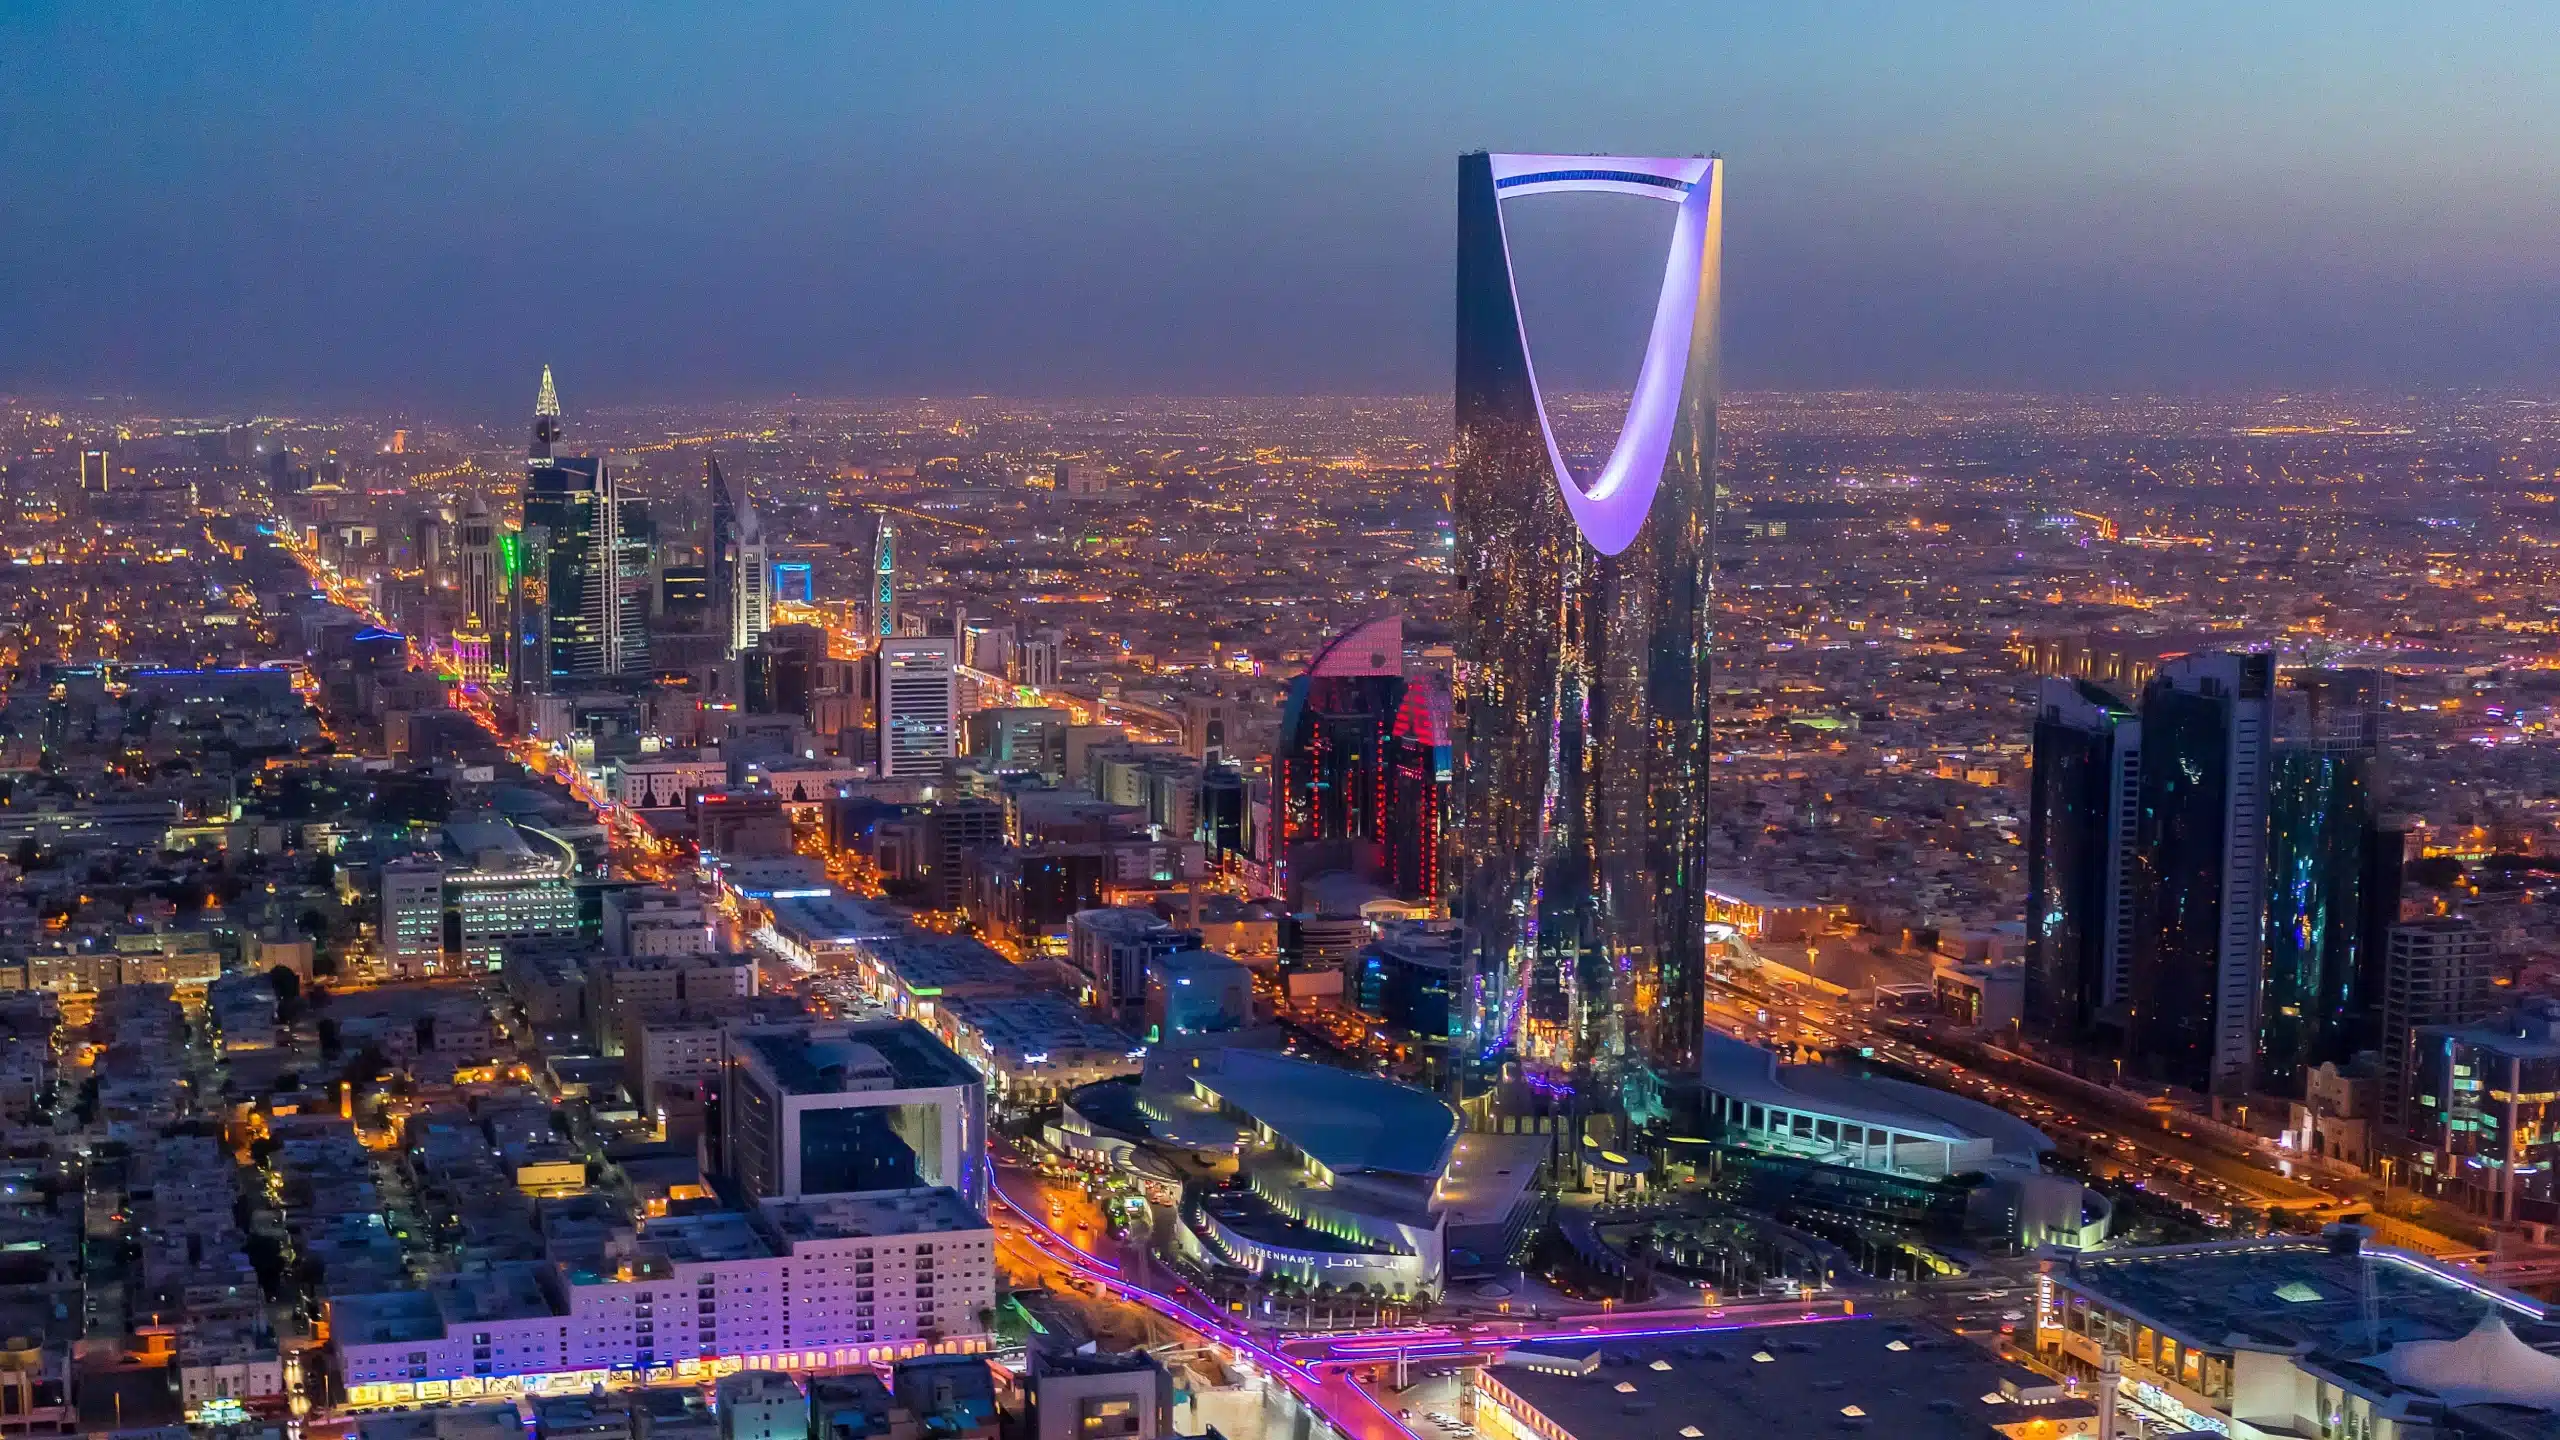 تسهيل الإجراءات الحكومية في المملكة العربية السعودية: نحو بيئة أعمال أكثر فعالية وتنافسية